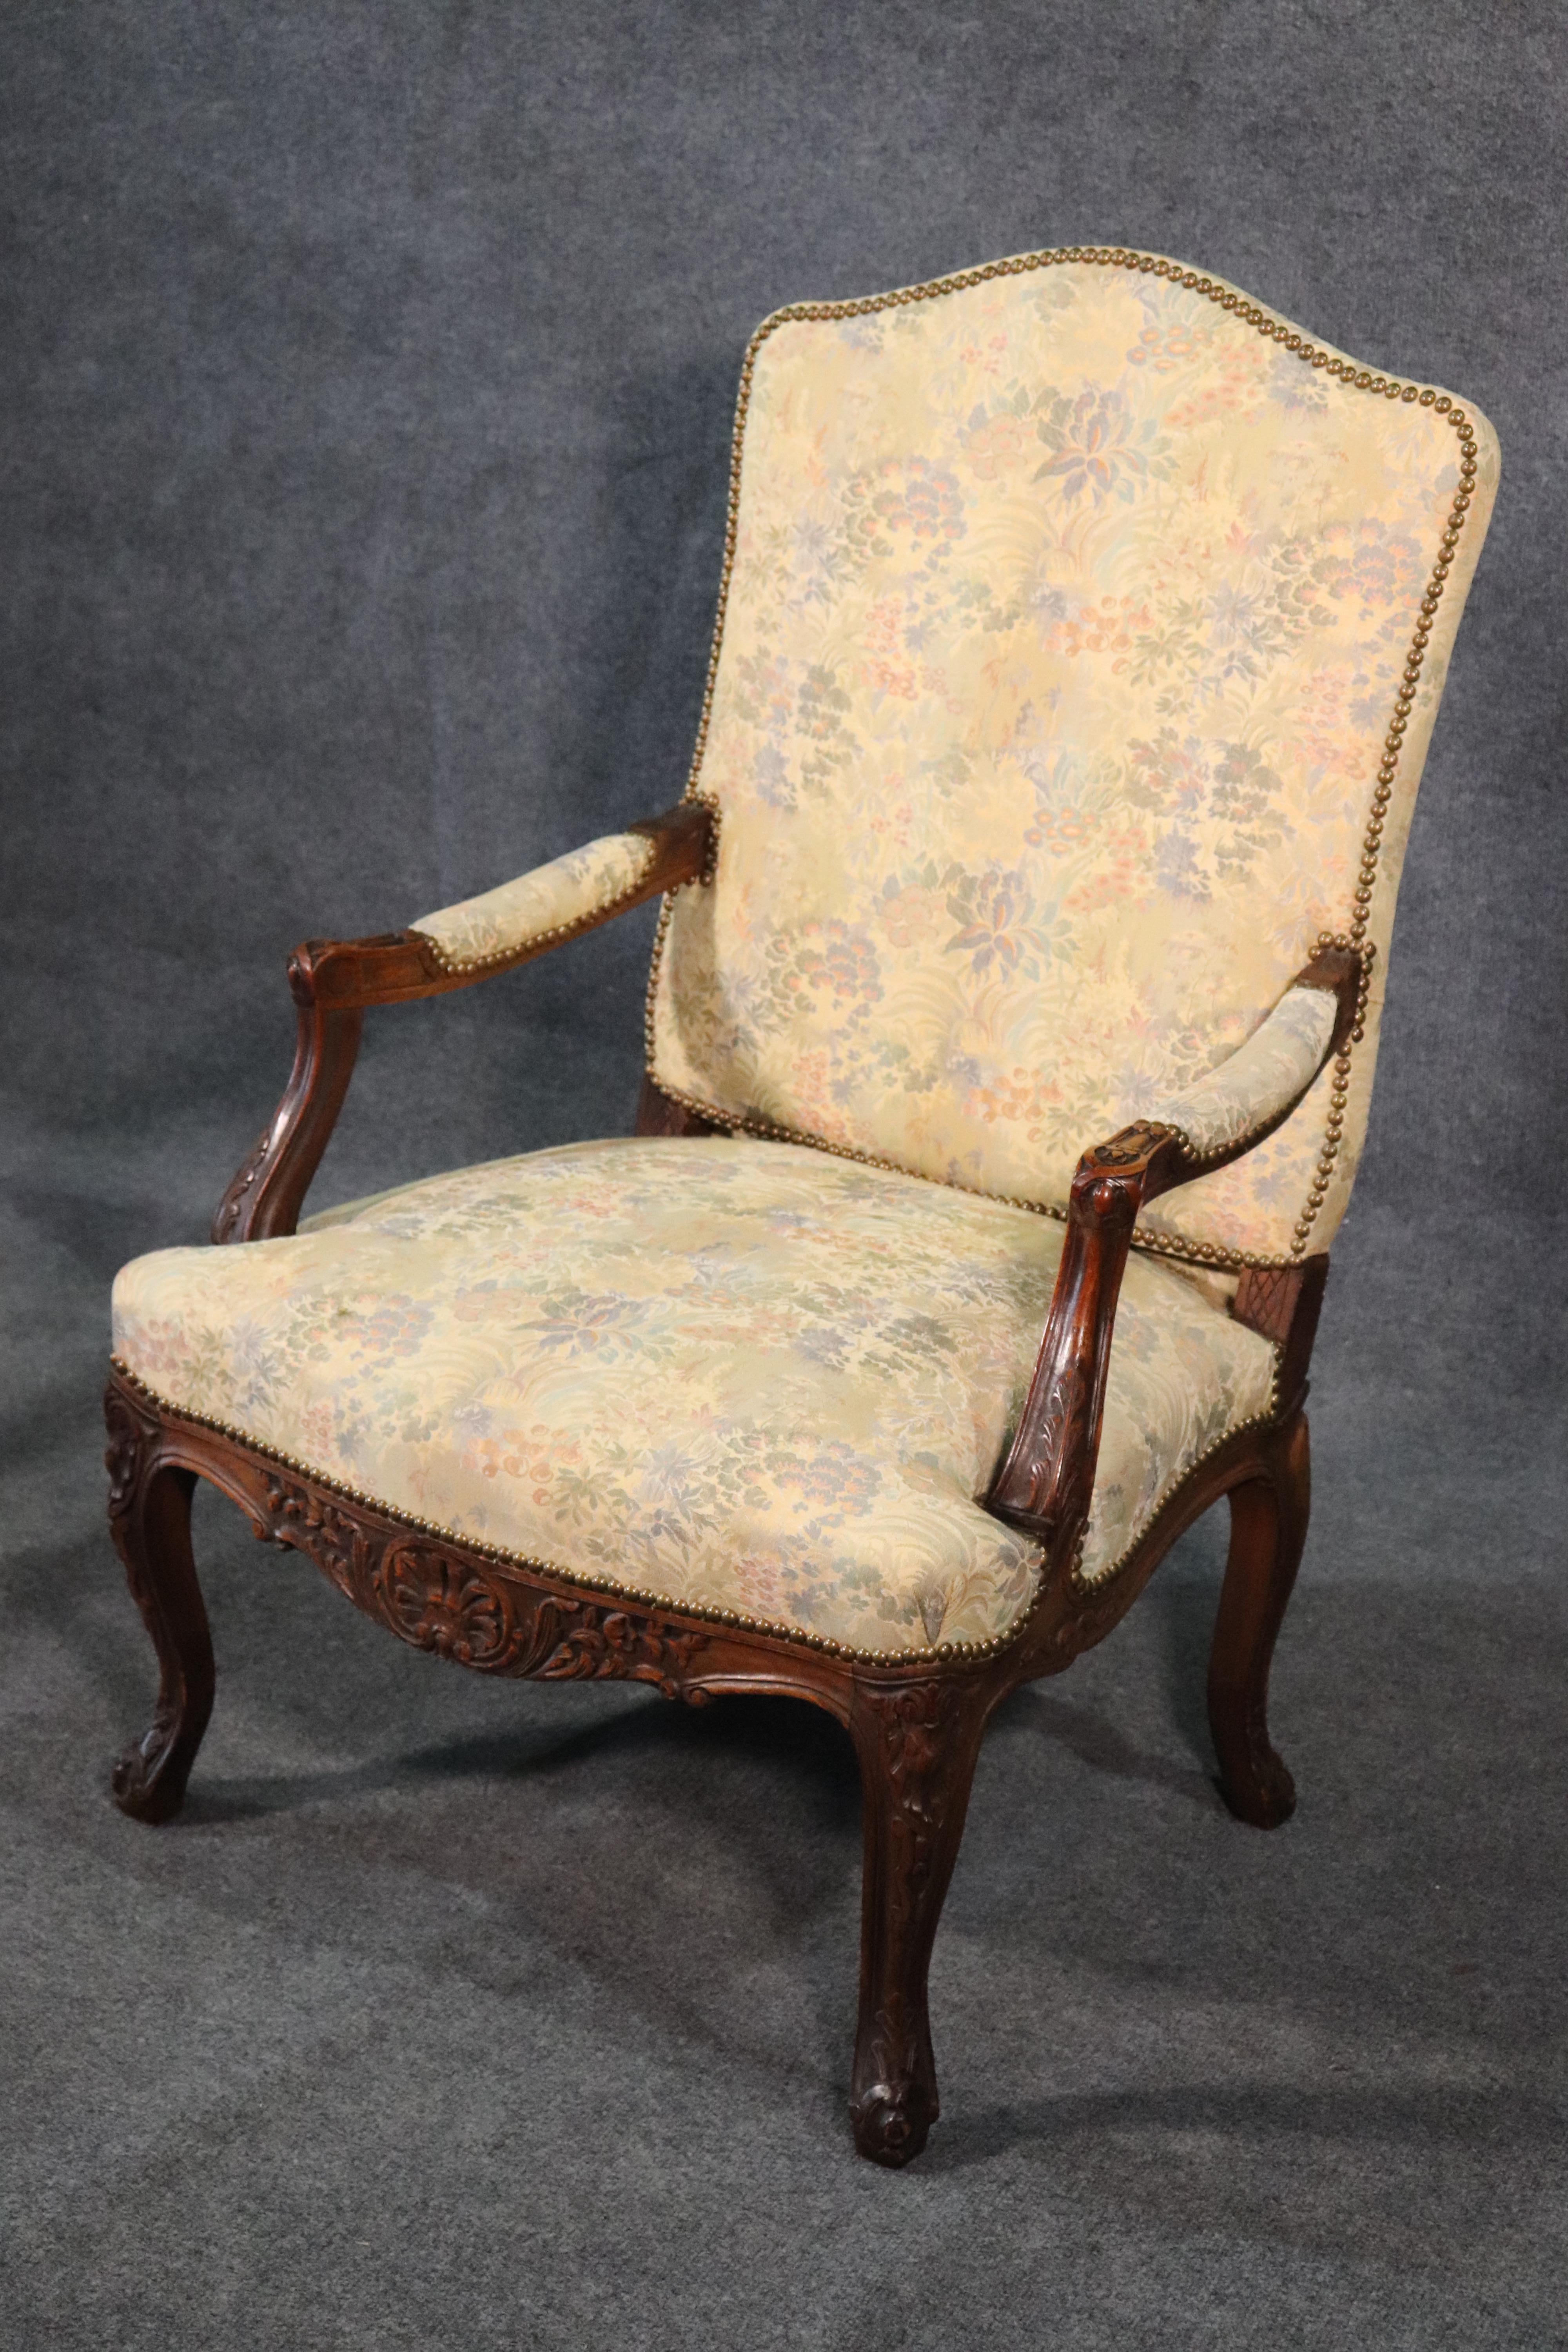 Dies ist ein feiner englischer Qualitätssessel aus den 1930er Jahren, der im georgianischen Stil entworfen wurde. Der Stuhl ist in sehr gutem Zustand und hat eine feine Gobelinpolsterung und Nagelkopfverzierungen. Der Stuhl misst
42 hoch x 28 breit